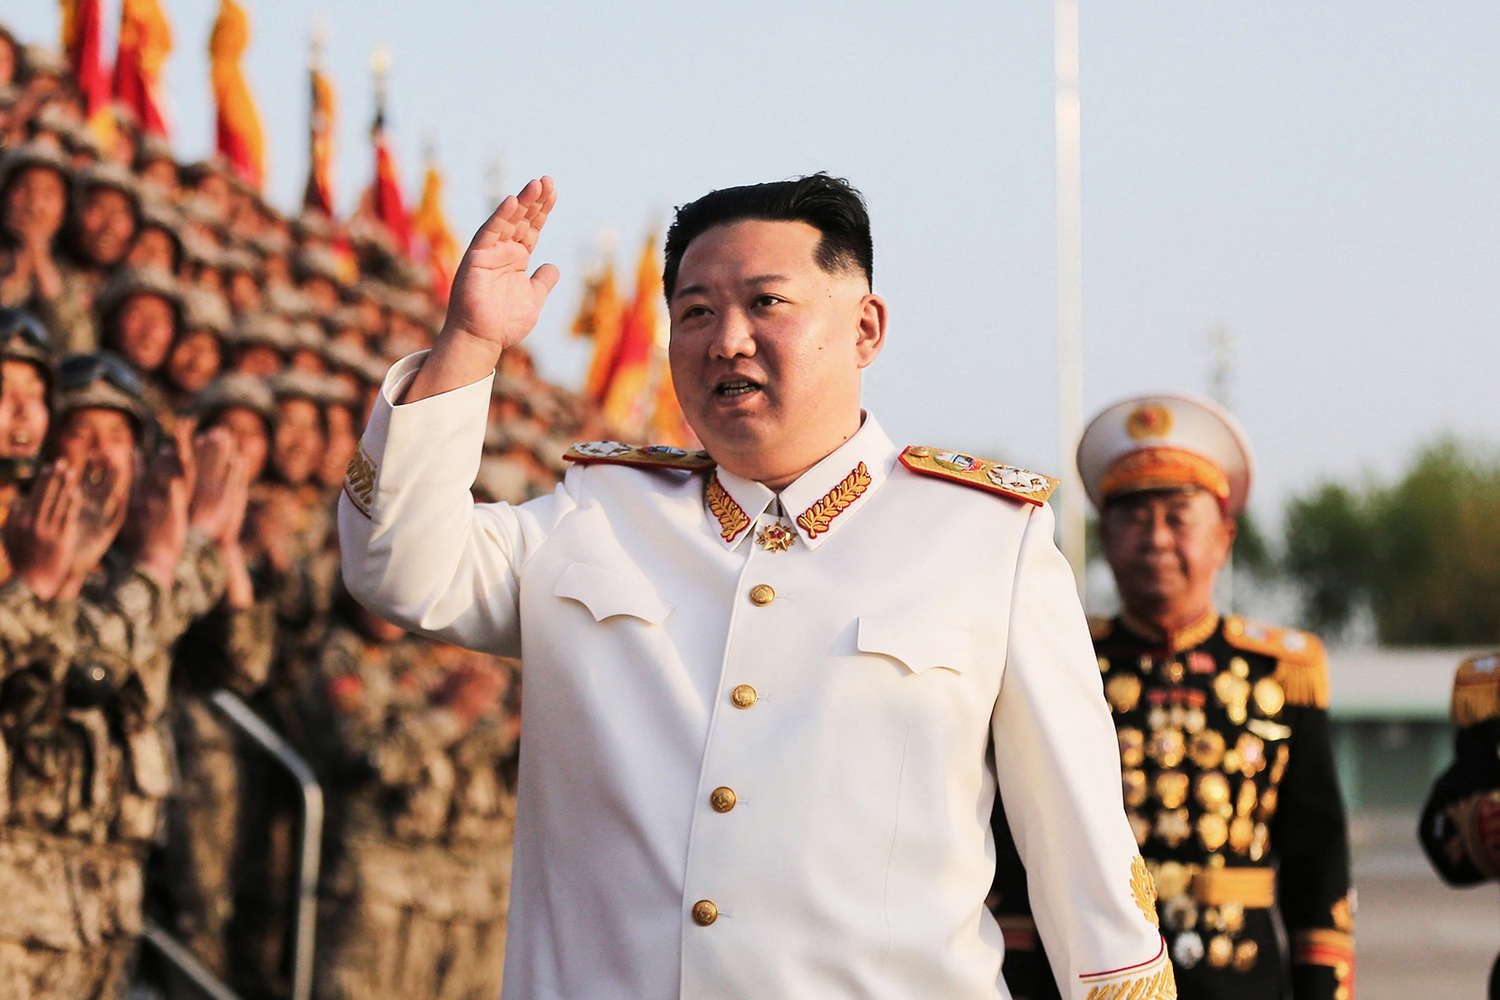 Ким Чен Ын призвал усилить оборону КНДР на фоне разрыва связи с Южной Кореей